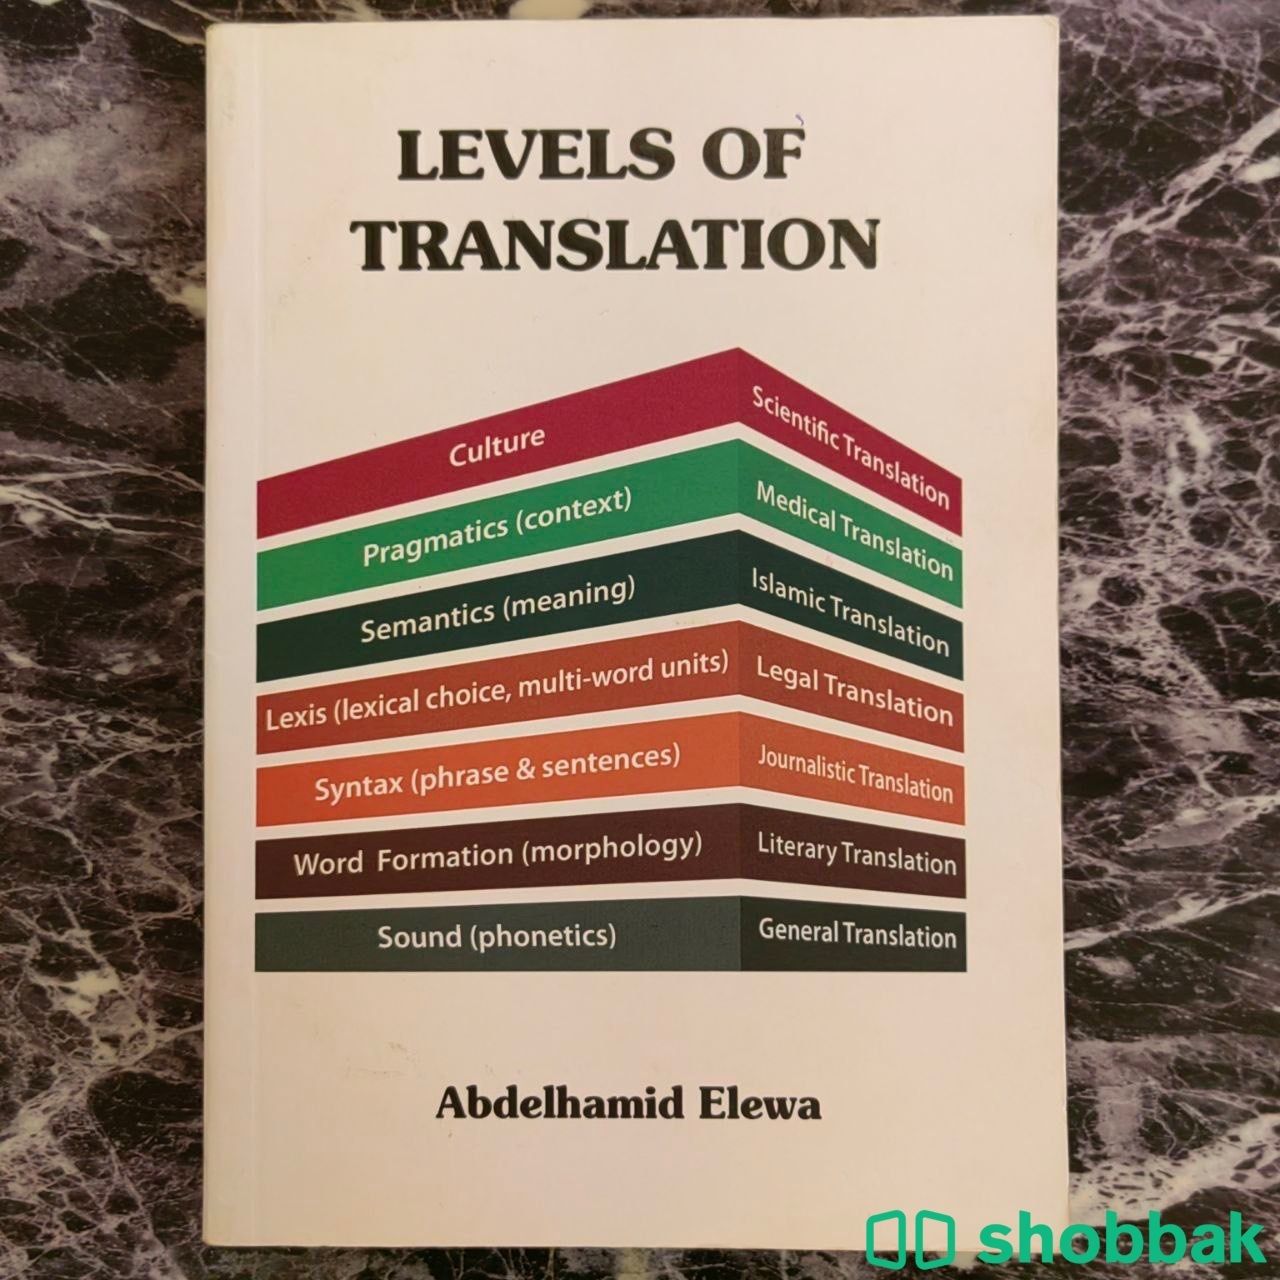 كتاب Levels of translation بأقل الأسعار للطلاب Shobbak Saudi Arabia